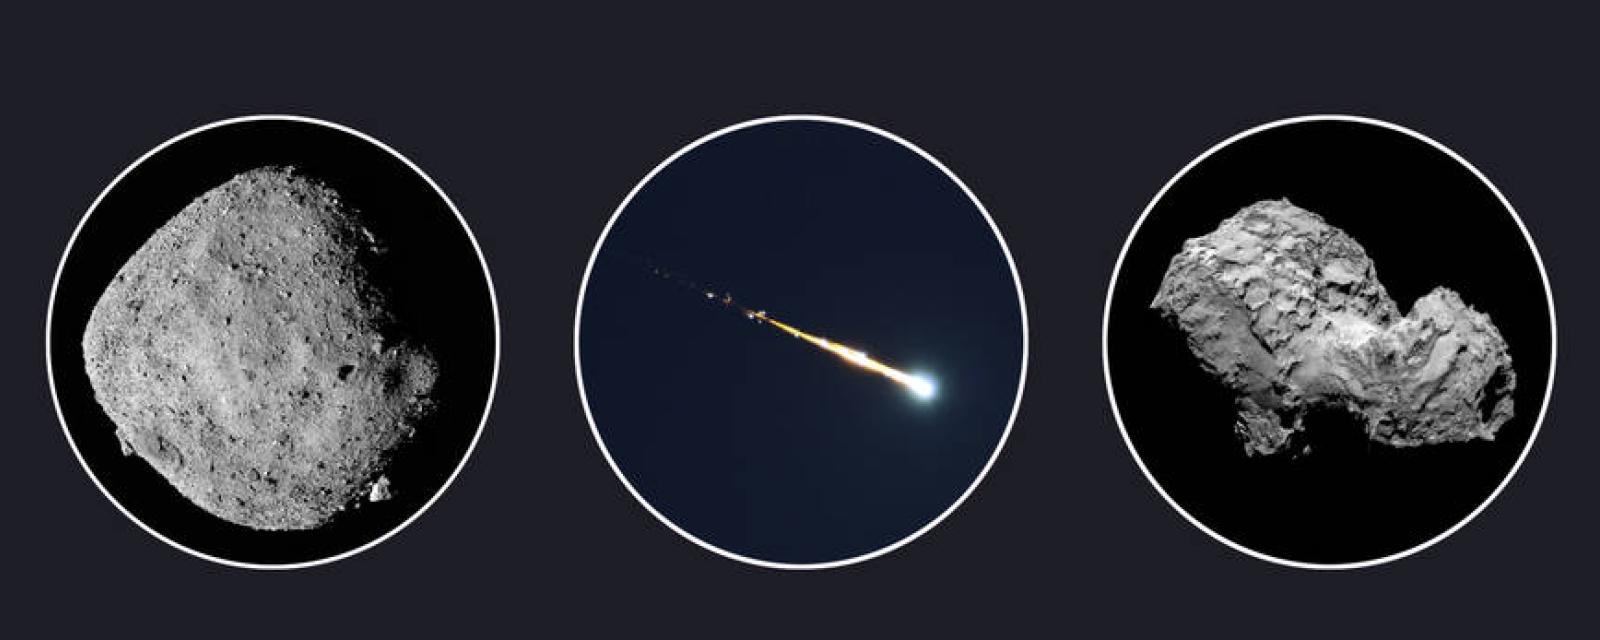 Left to right: Asteroid Bennu, Fireball Meteor over Groningen, and Comet 67P Credits: Bennu: NASA, Meteor: Robert Mikaelyan, Comet 67P: ESA